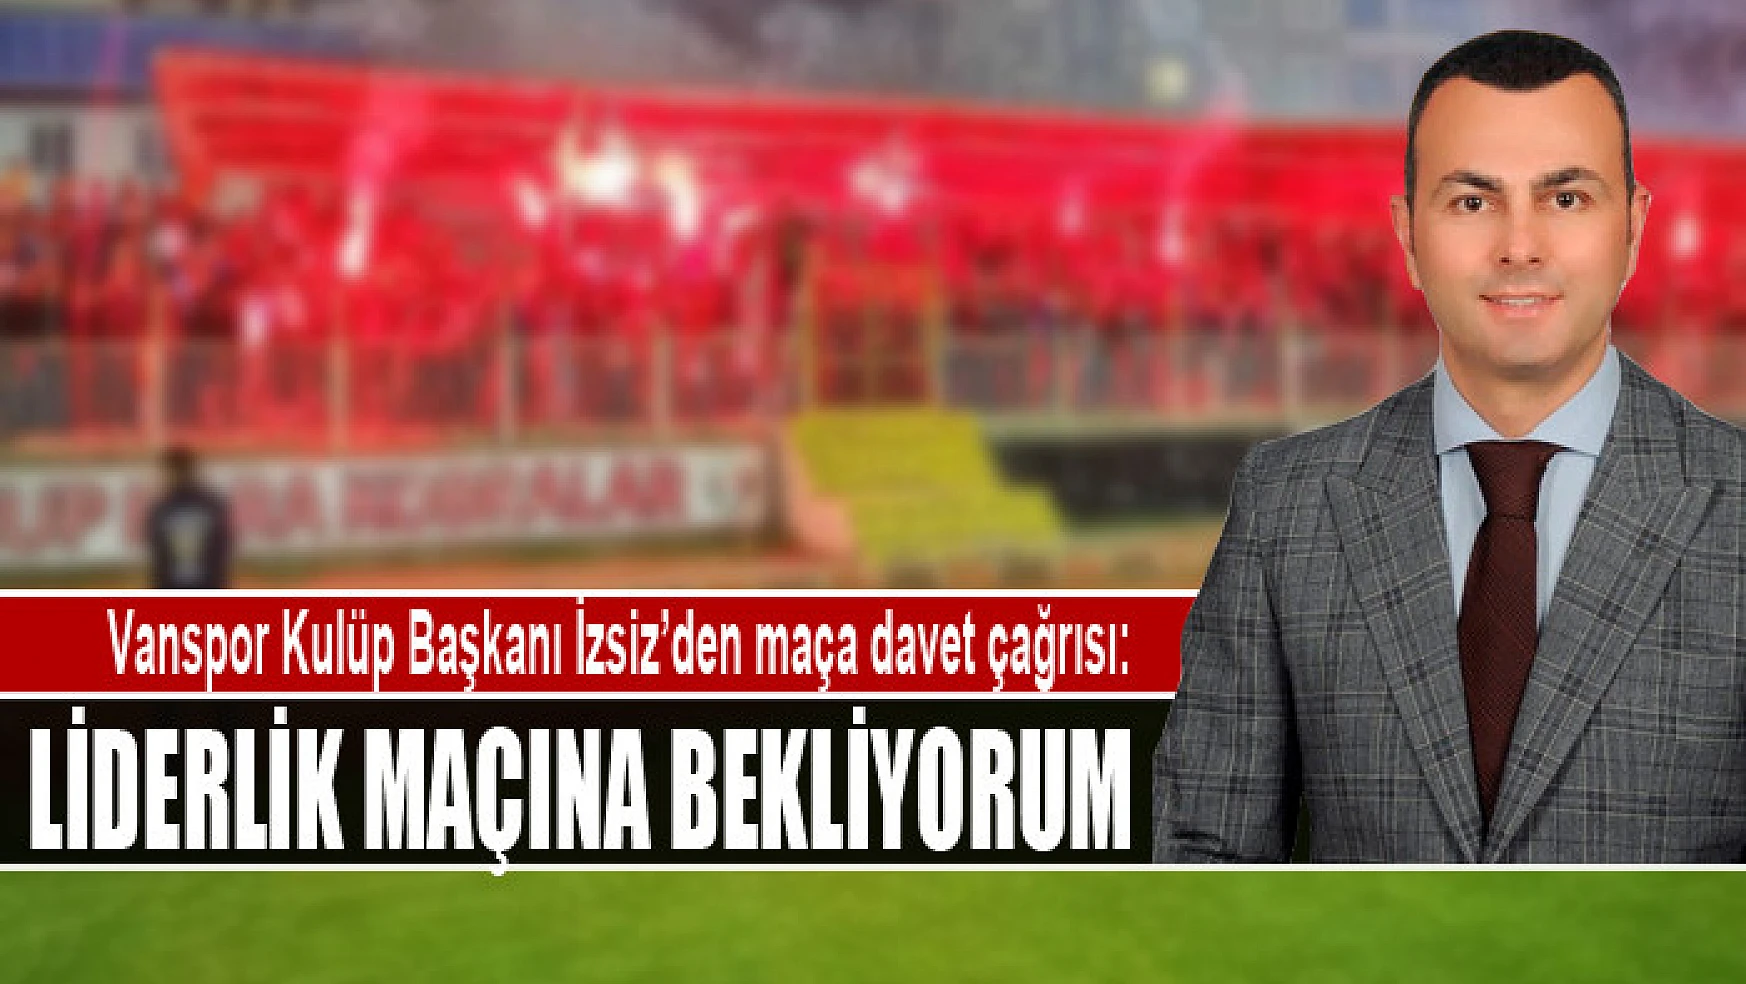 Vanspor Kulüp Başkanı İzsiz'den maça davet çağrısı: Liderlik maçına bekliyorum